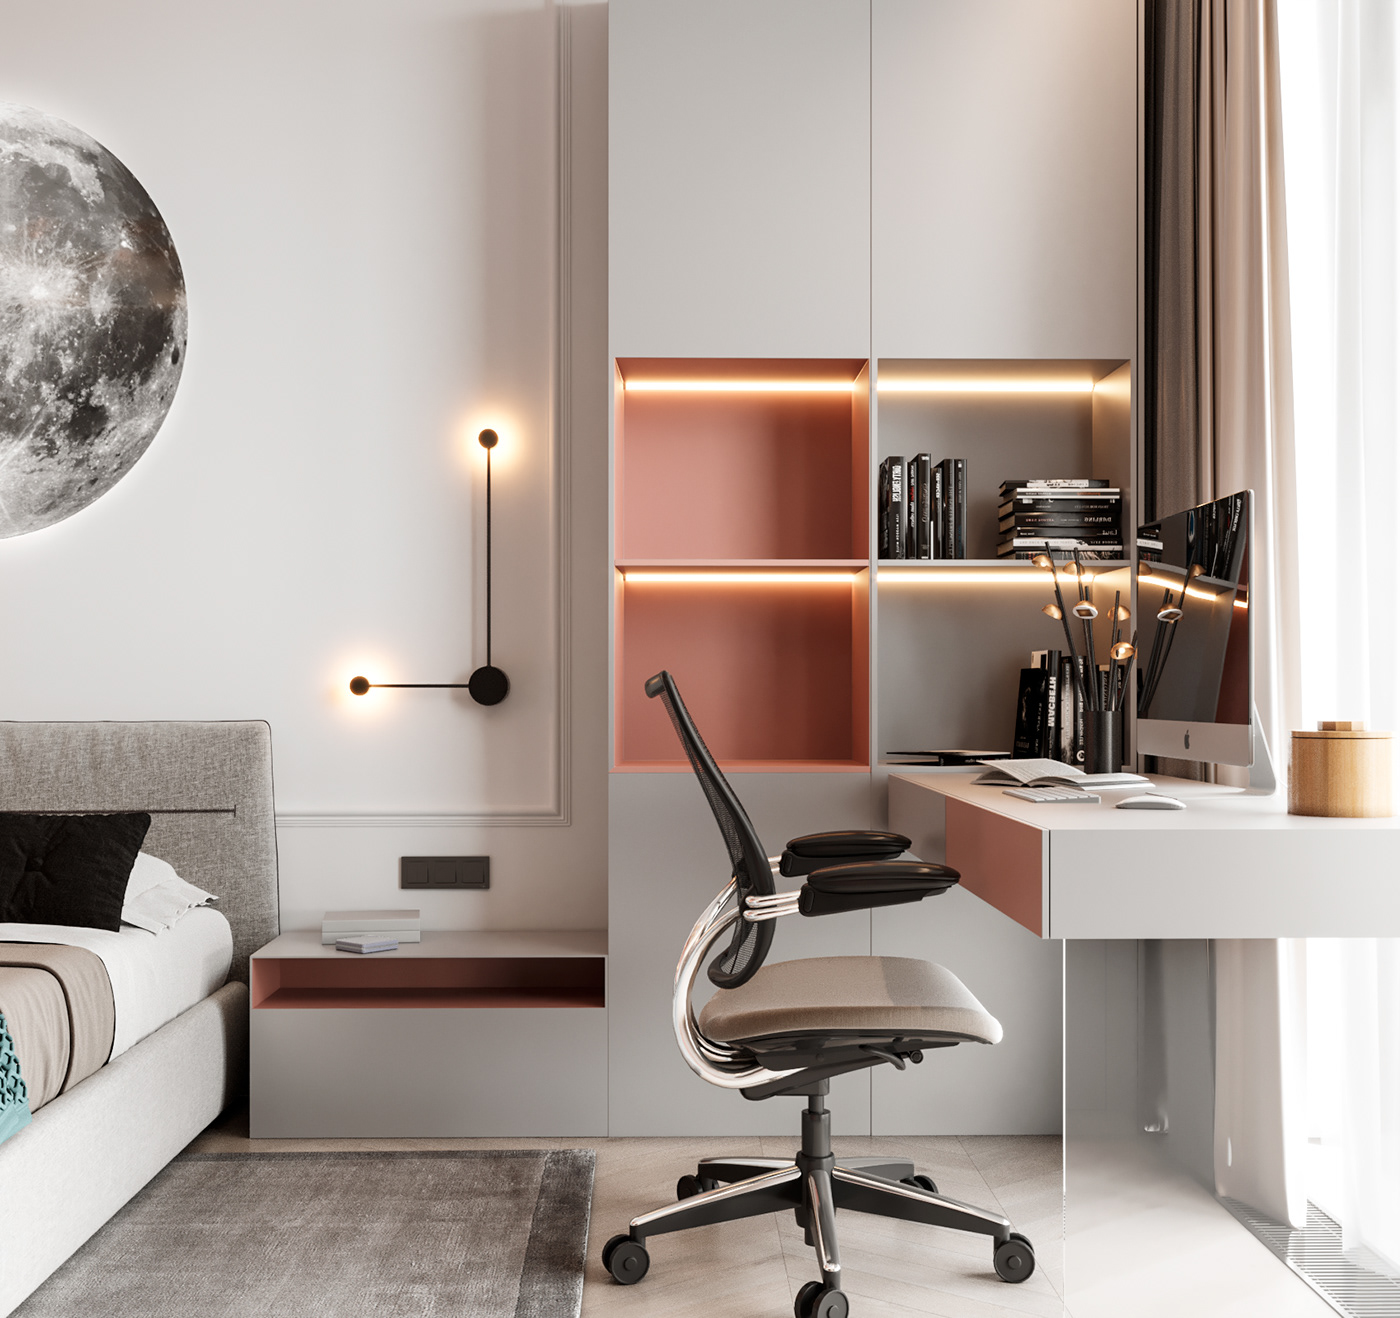 3D 3ds max architecture bedroom interior design  kids room design minimal modern modern interior visualization